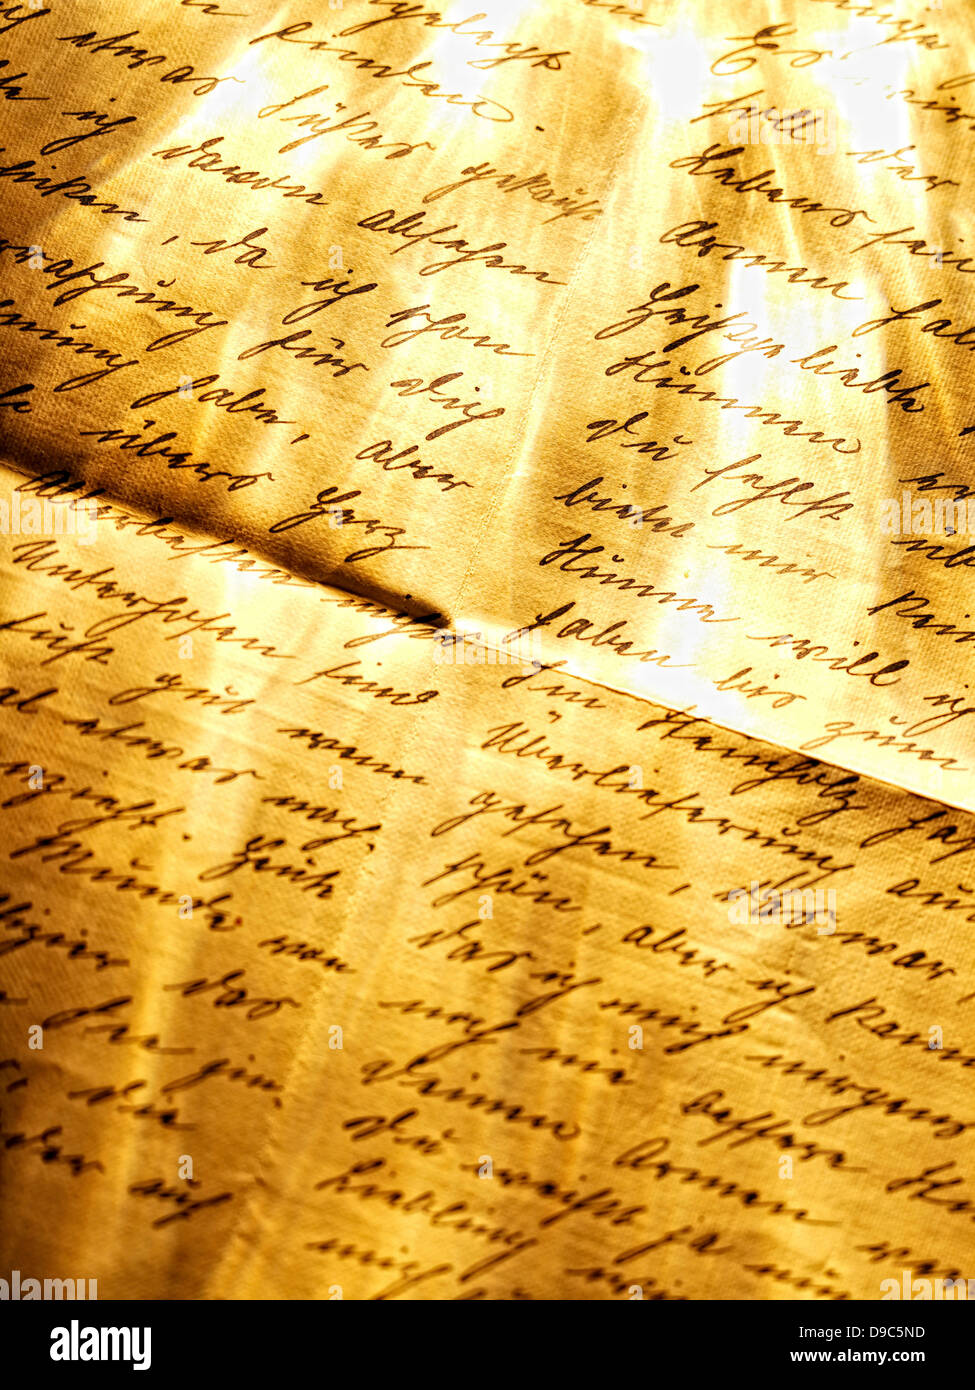 Vieille lettre manuscrite Banque D'Images